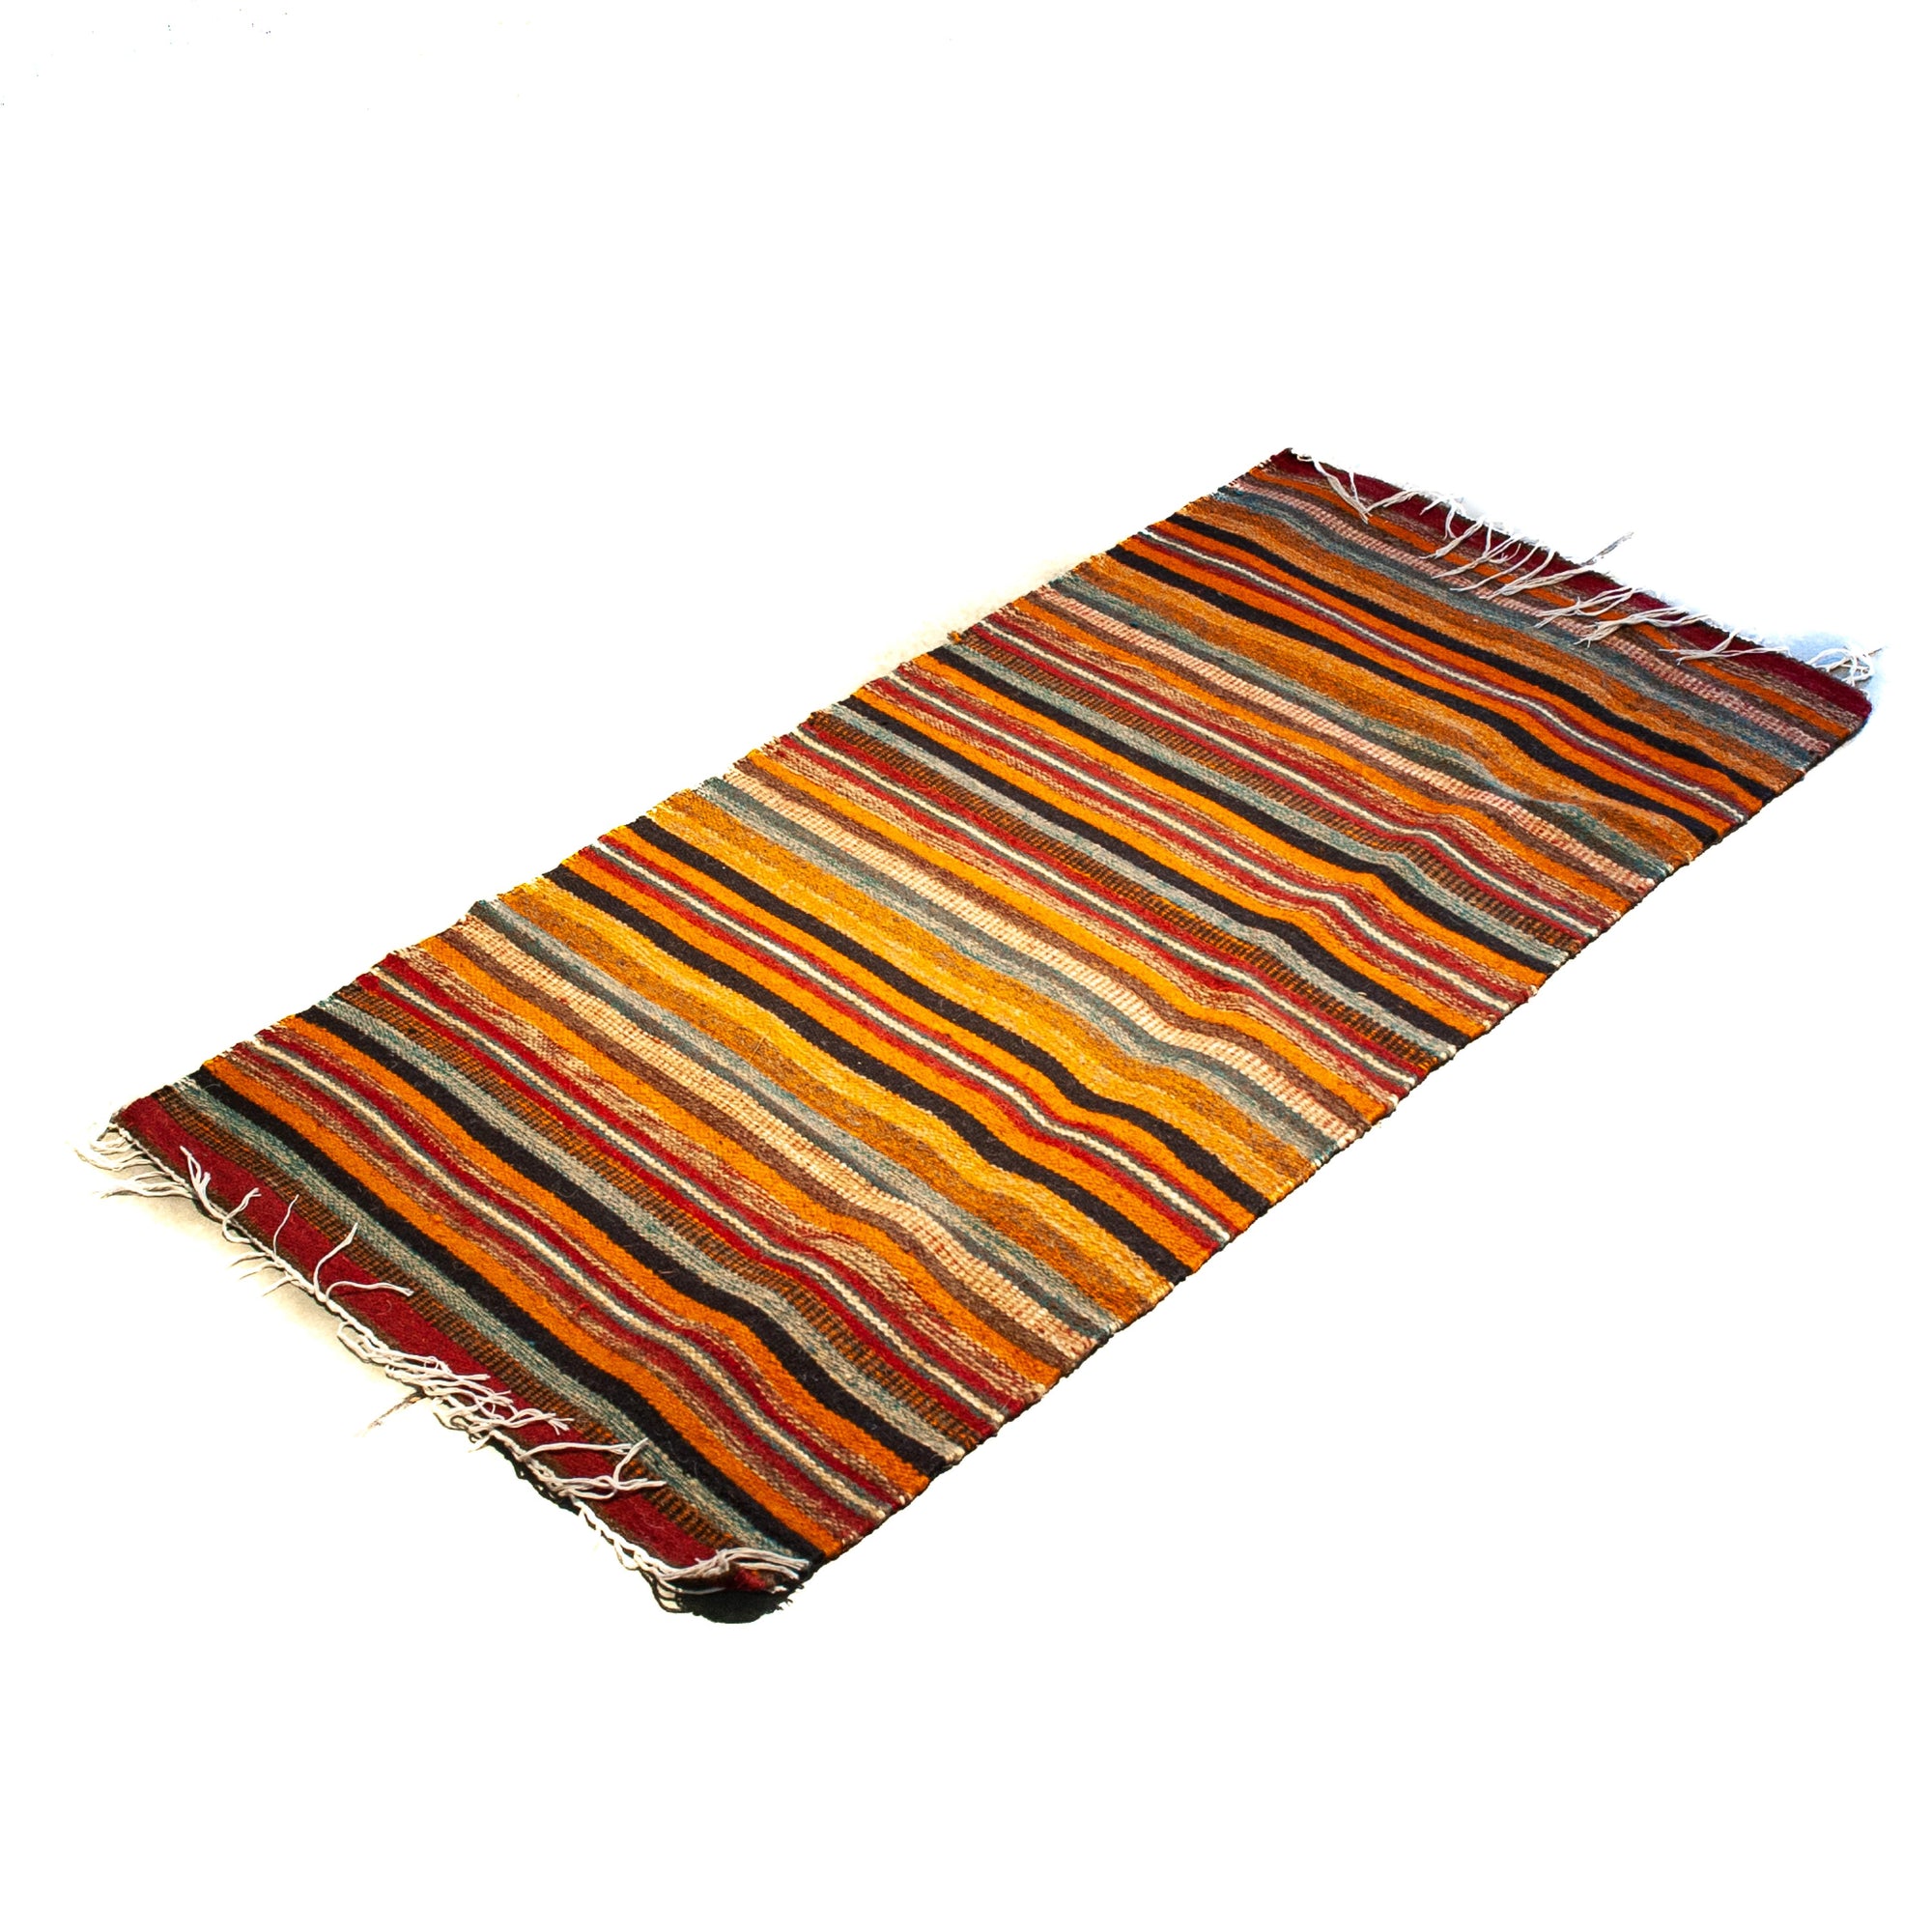 Egyptian Cotton Kilim - 2 M x 0.7 M - Orange Stripes